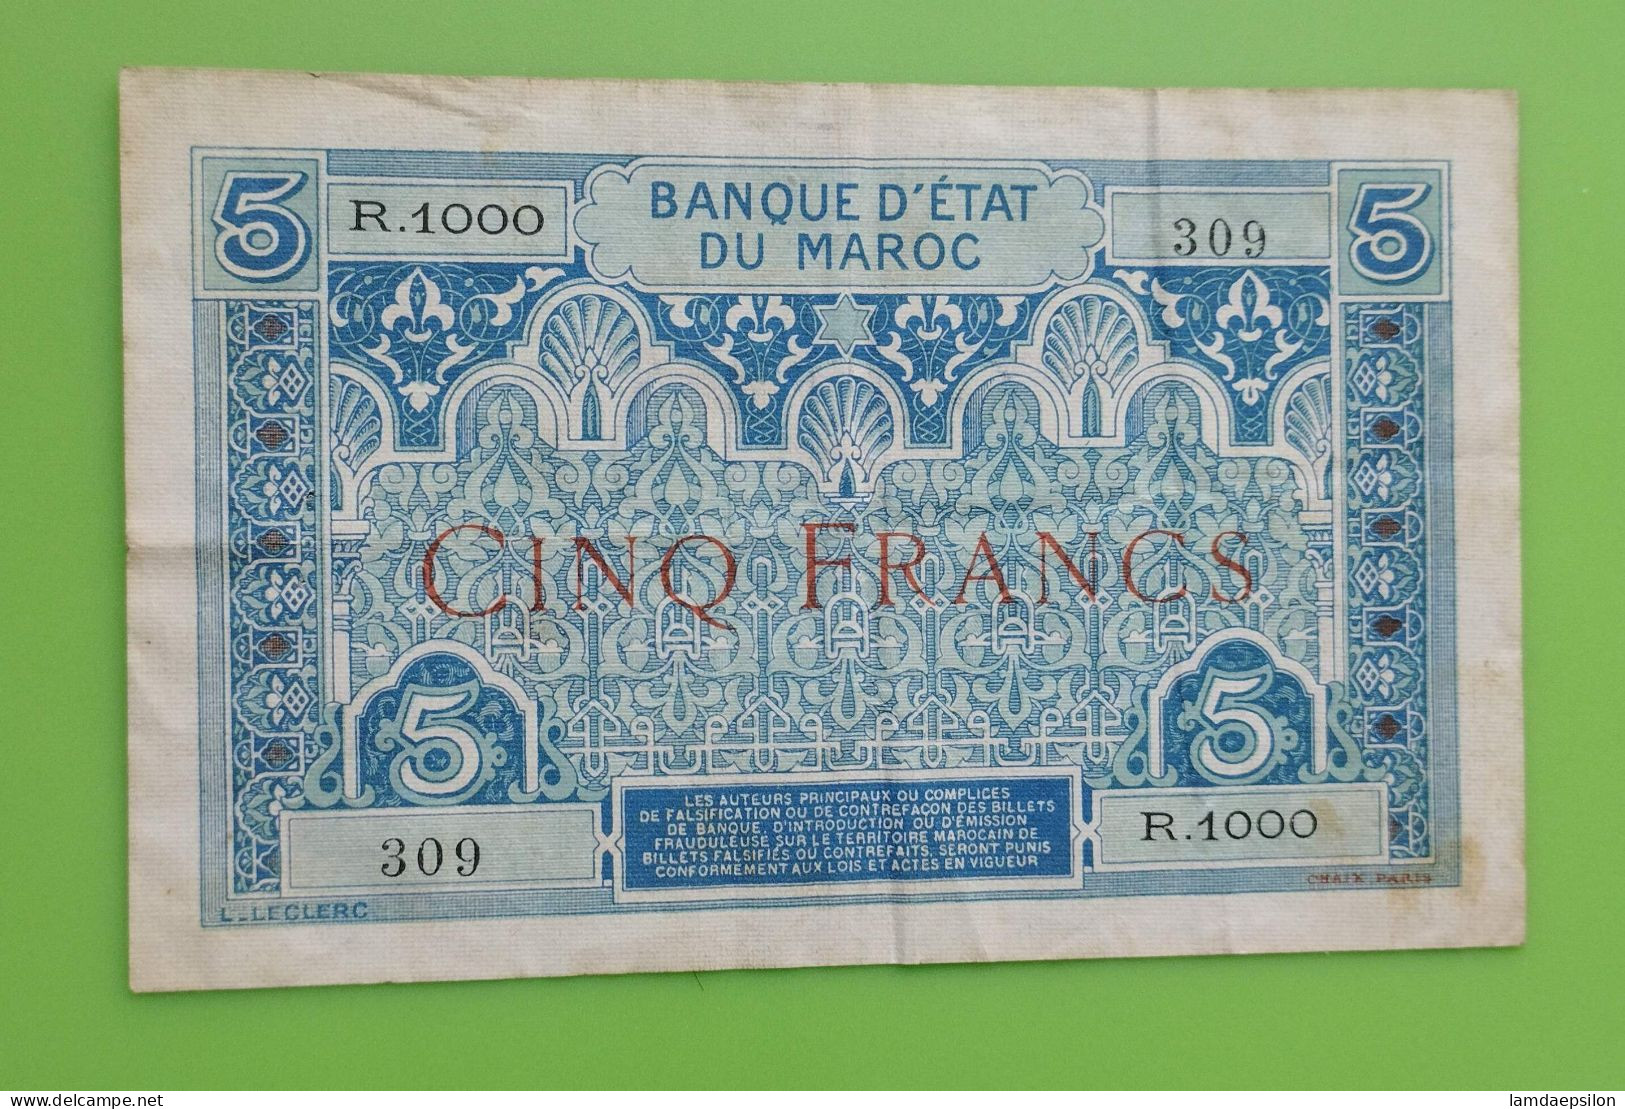 MAROC MOROCCO MARRUECOS MAROKKO BANQUE D'ETAT 5 FRANC 1924 RARE SIGNATURE - Morocco